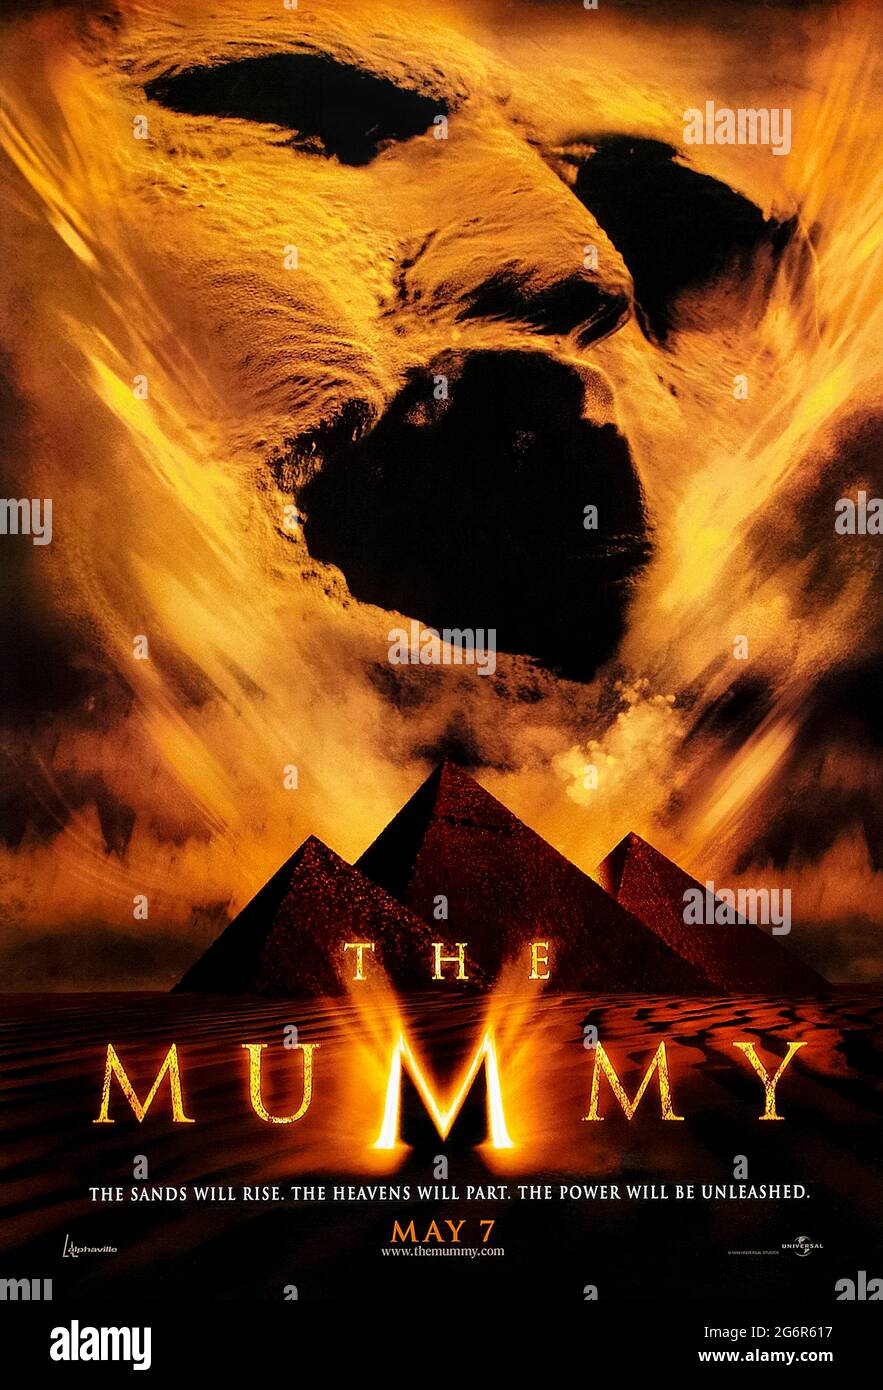 The Mummy (1999) réalisé par Stephen Sommers et mettant en vedette Brendan Fraser, Rachel Weisz et John Hannah. Remake à succès du film de 1932 où le cadavre momifié d'un prêtre égyptien, Imhotep, est accidentellement racheté à la vie. Photographie d'une affiche originale US Advance de 1999 ***USAGE ÉDITORIAL SEULEMENT***. Crédit : BFA / Universal Pictures Banque D'Images